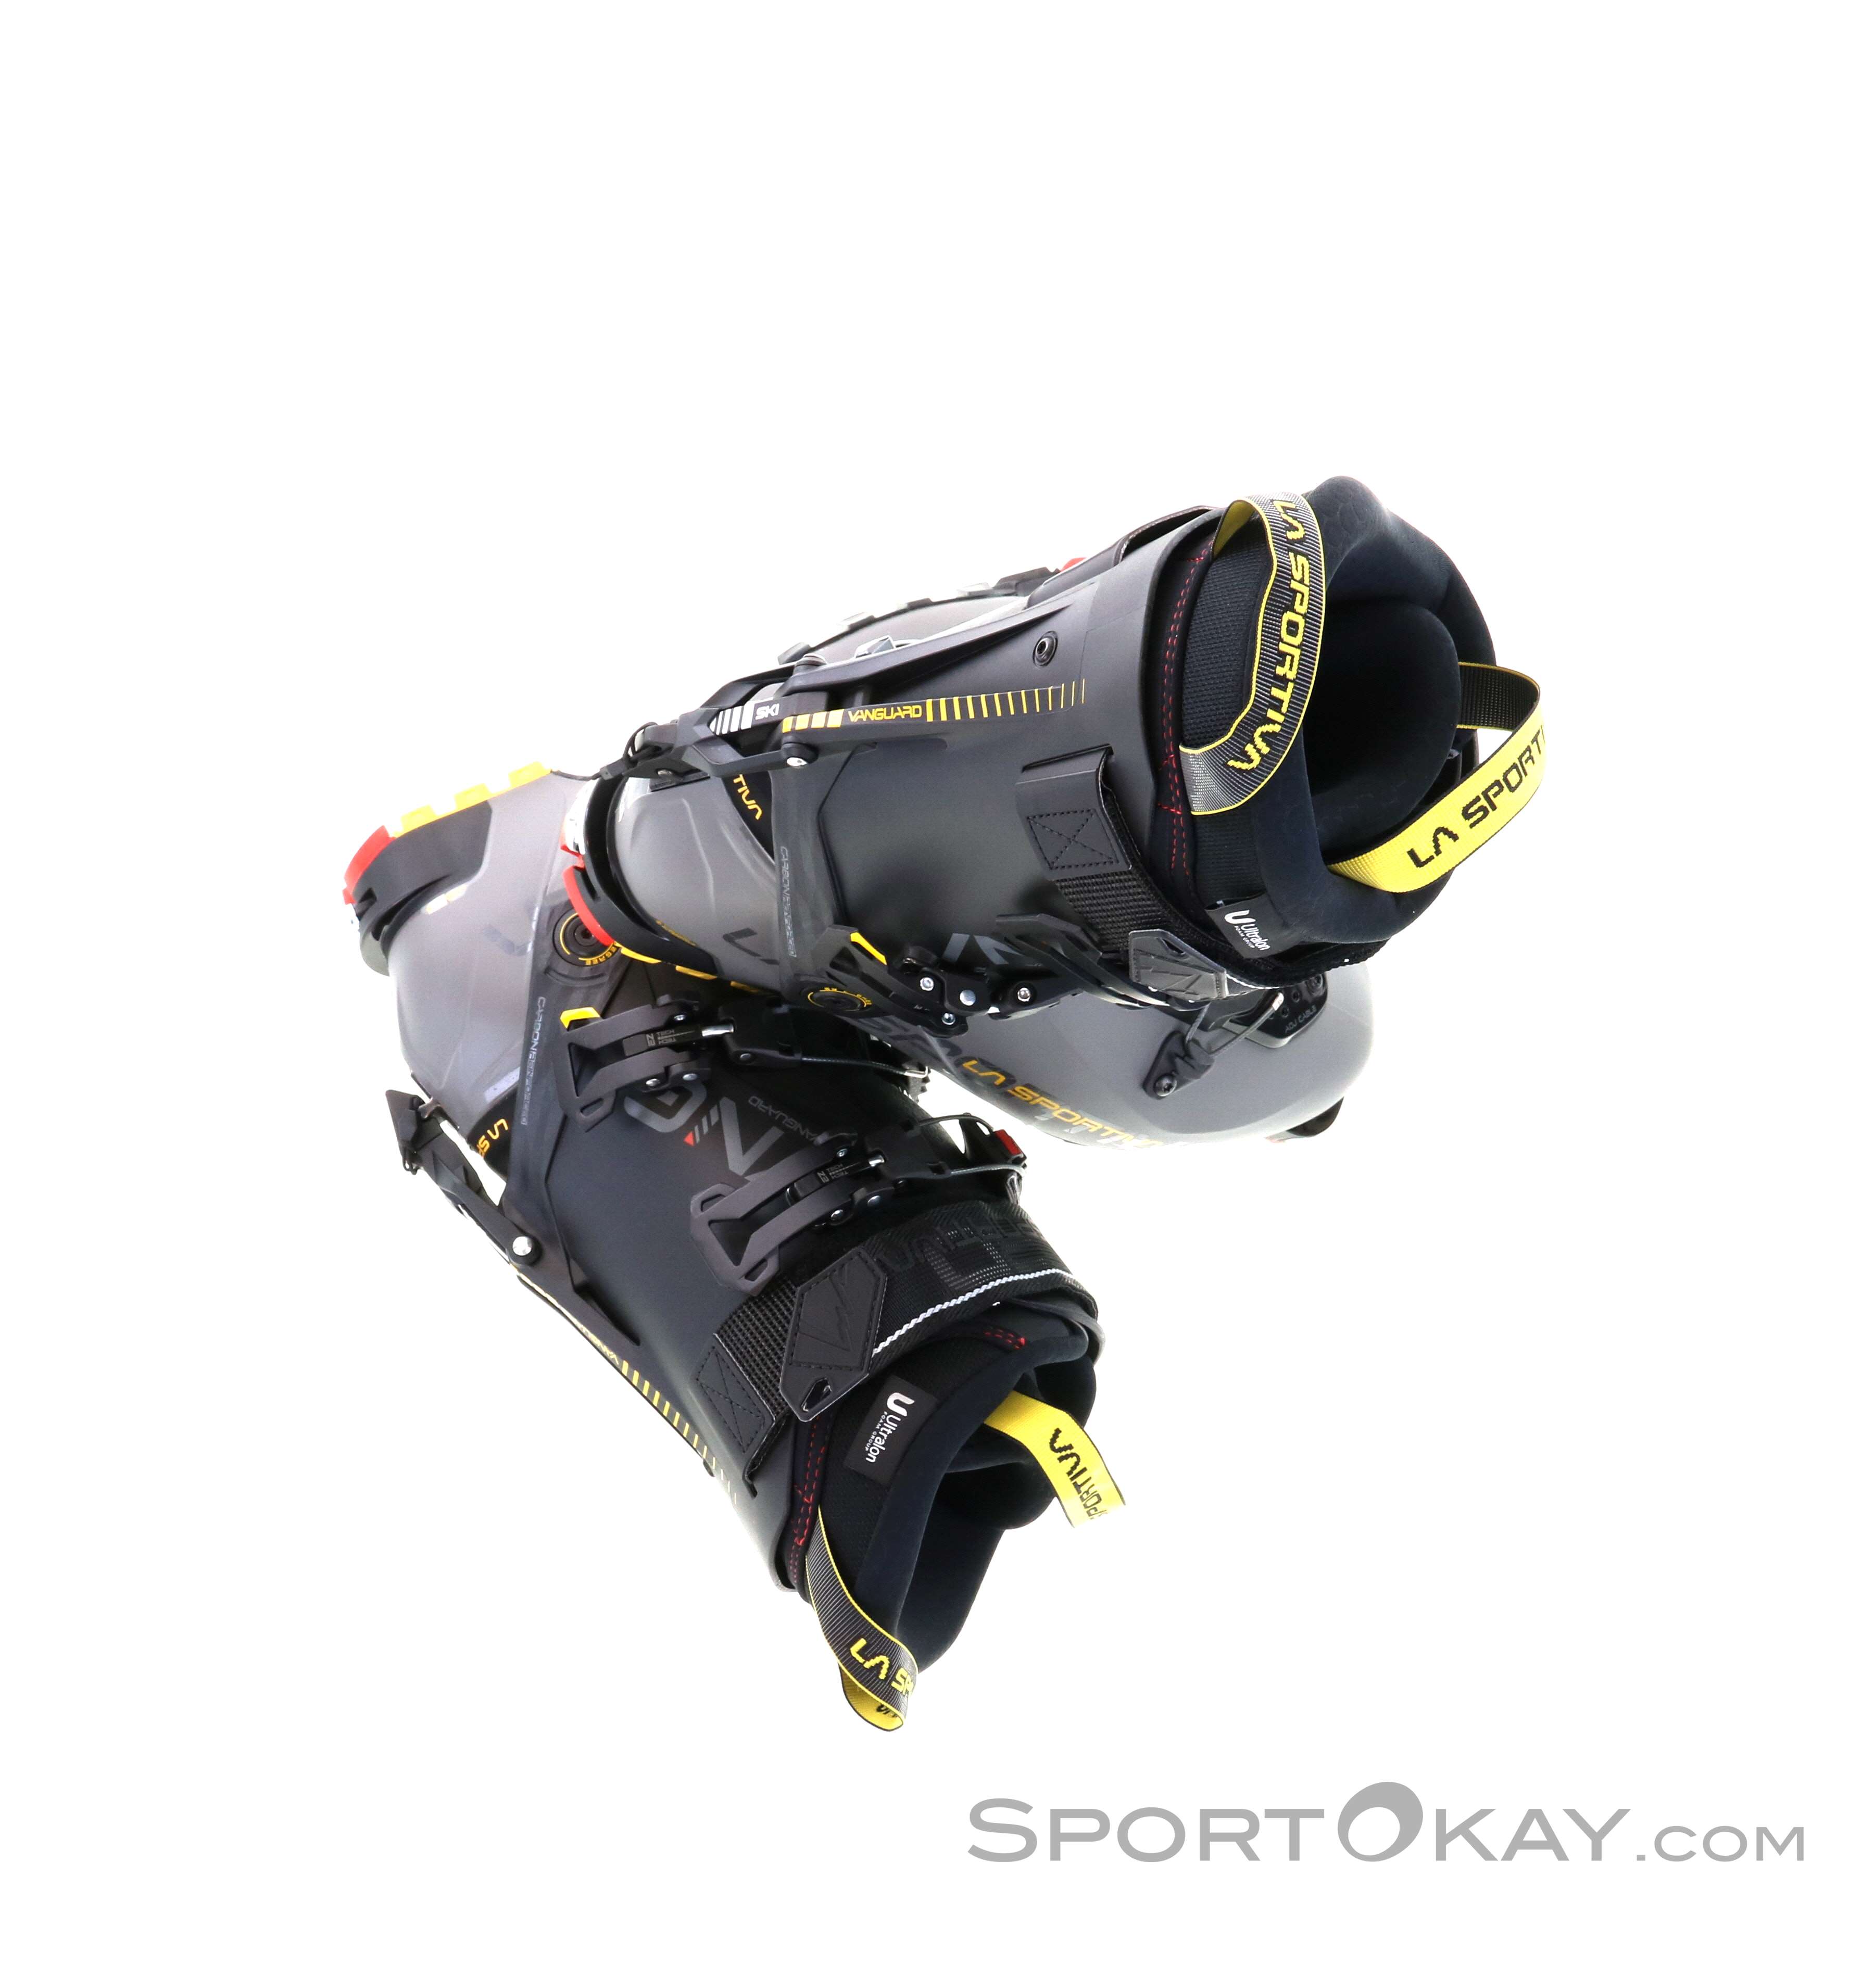 La Sportiva VANGUARD - Botas de esquí hombre turtle/yellow - Private Sport  Shop